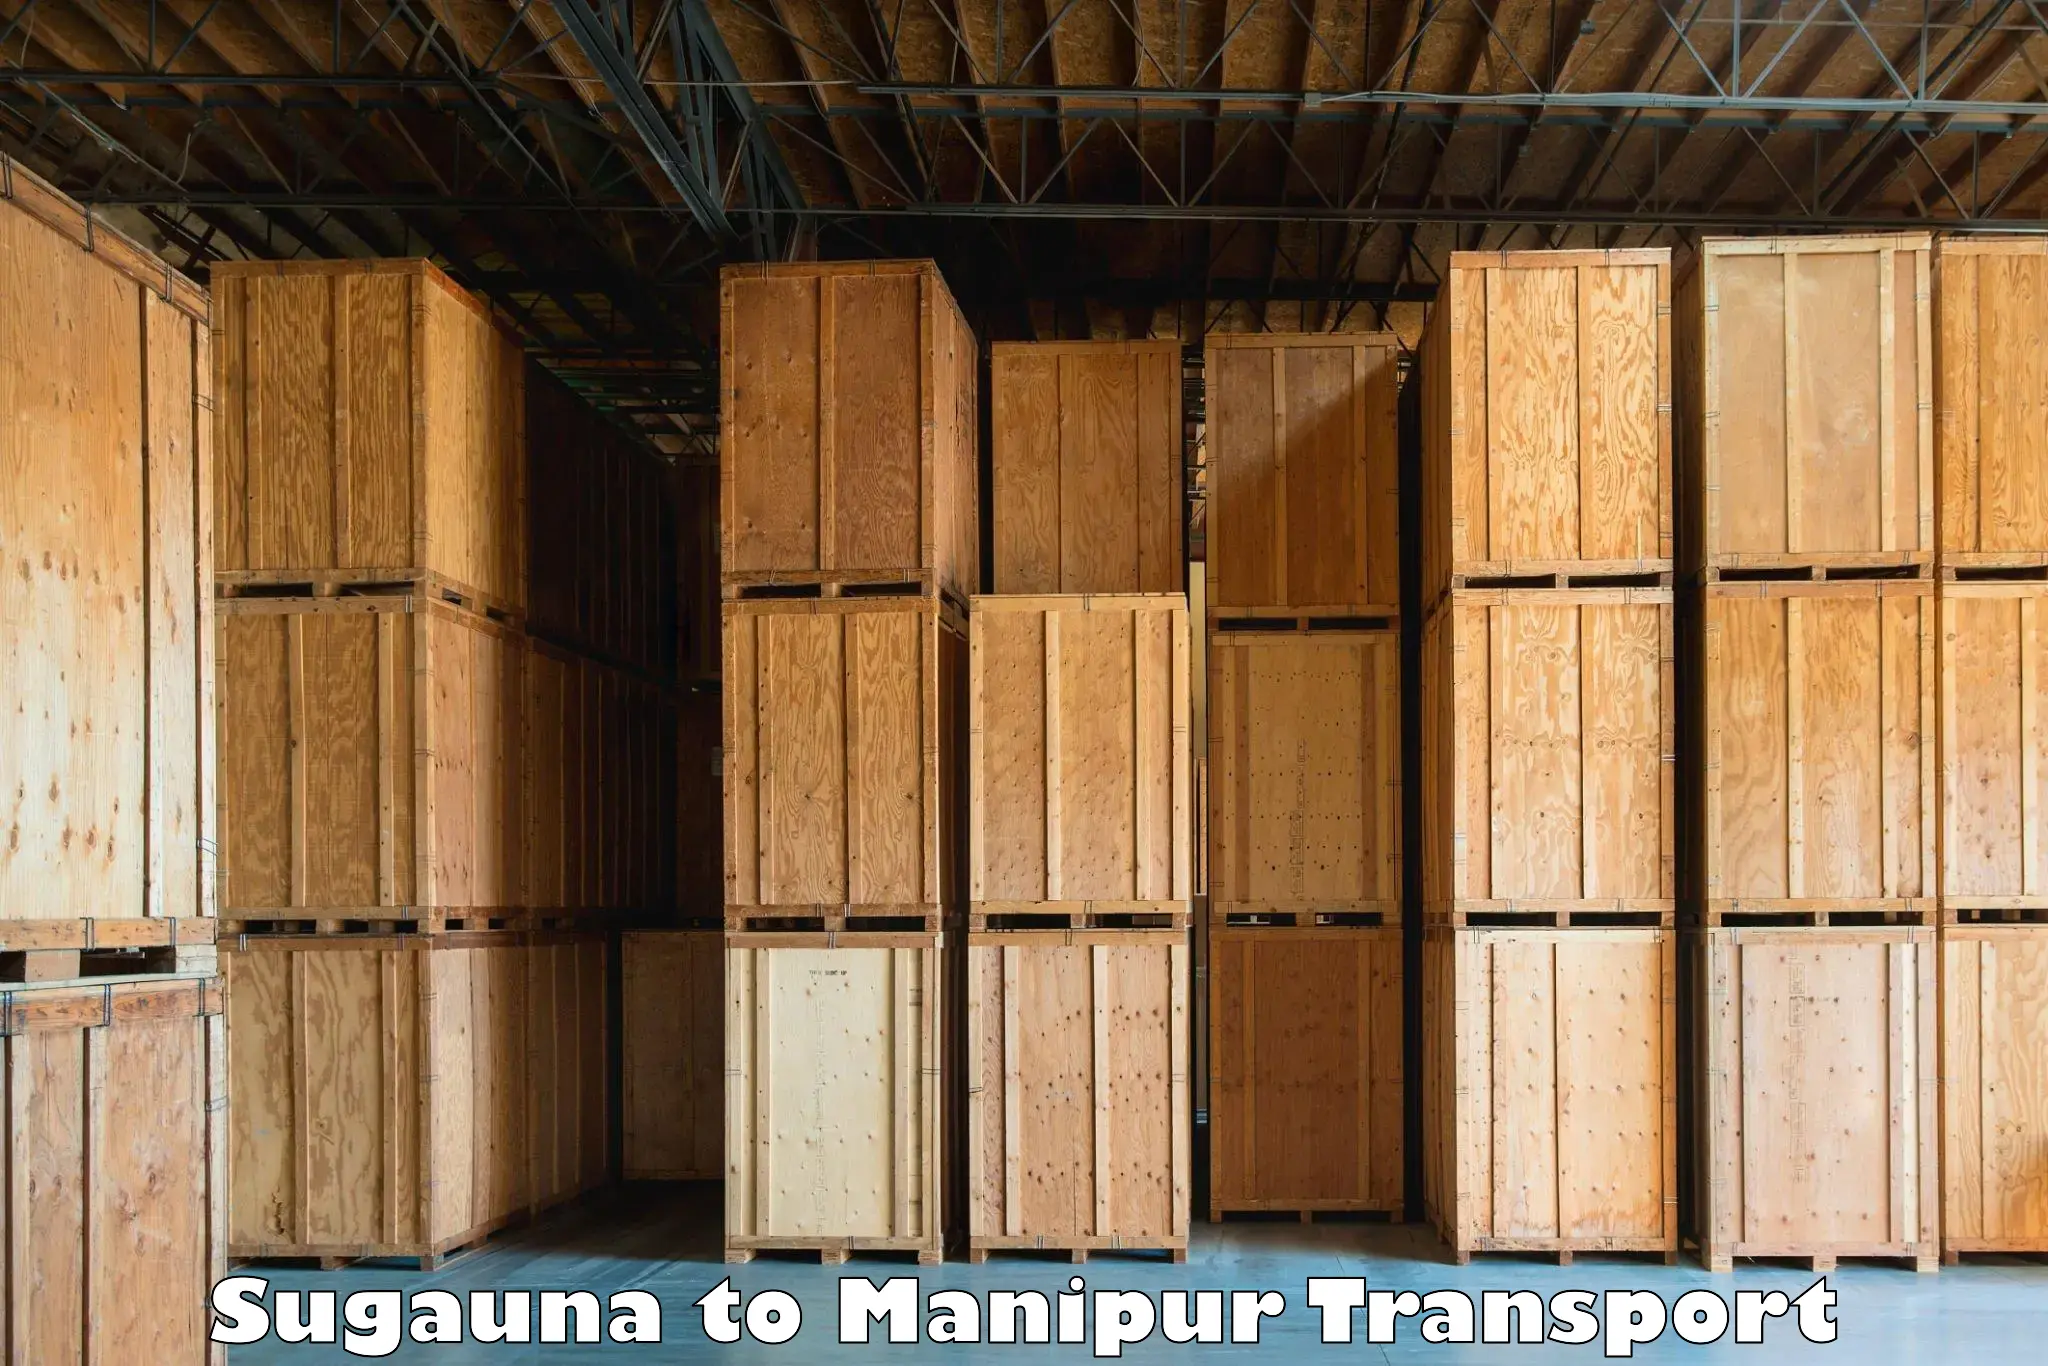 Interstate transport services Sugauna to Manipur